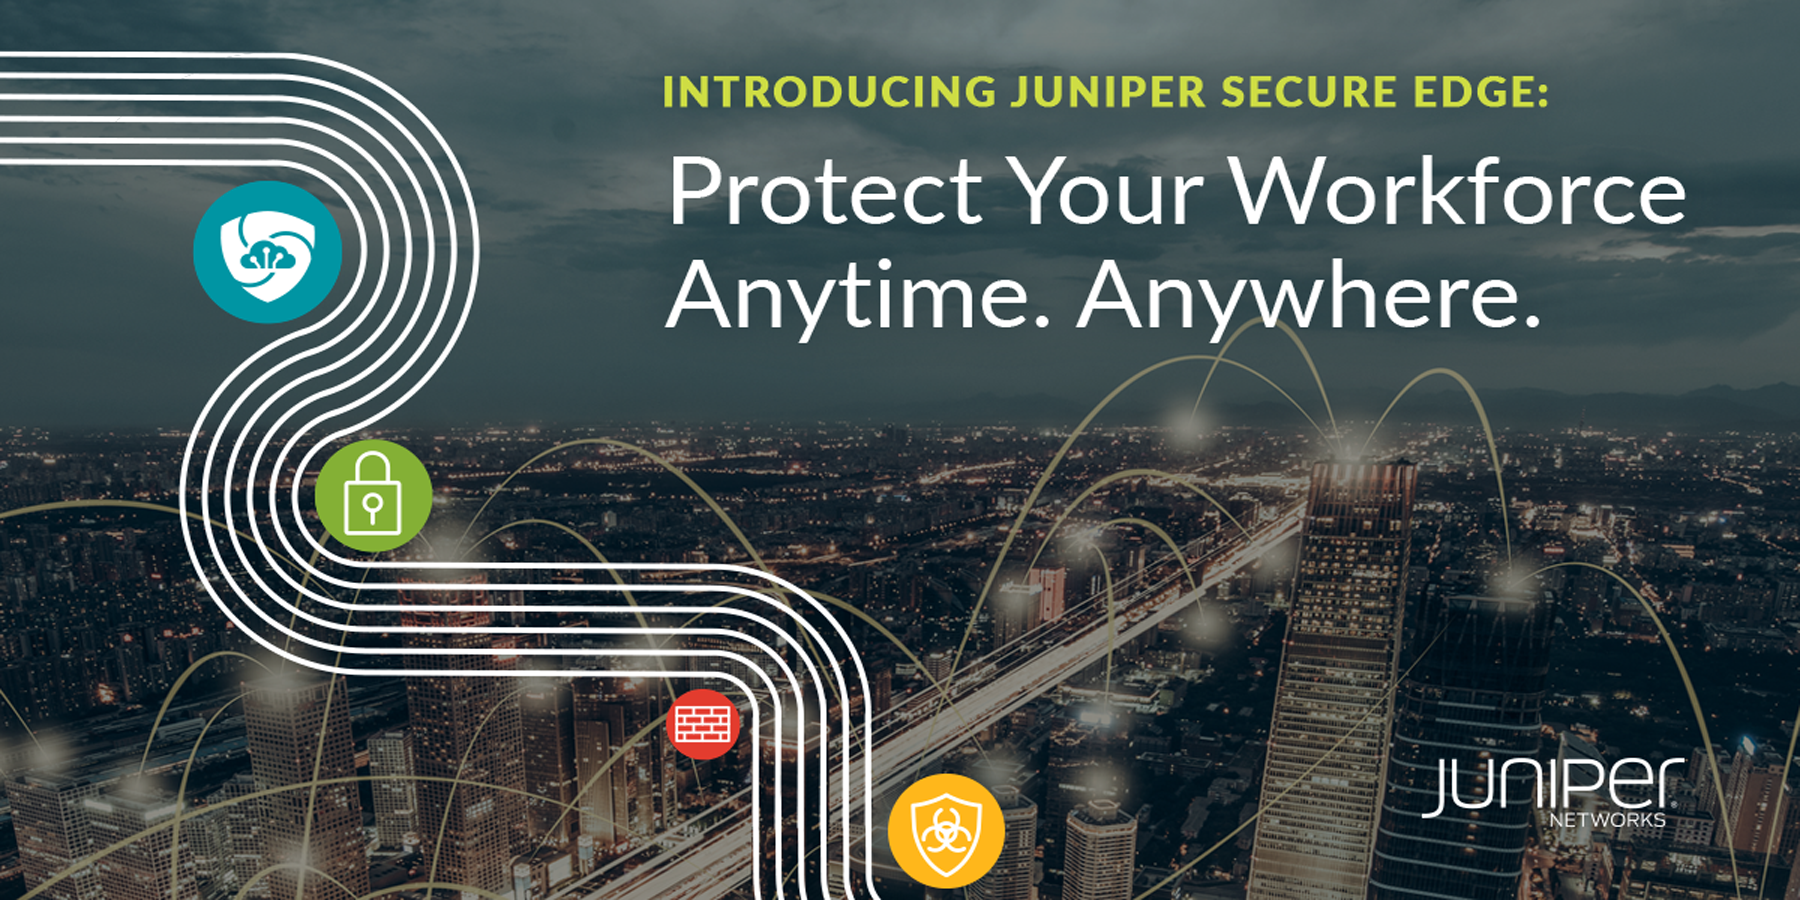 Juniper elimina l’edge dalla migrazione SASE con i nuovi servizi firewall forniti sul cloud, progettati per la protezione della forza lavoro in qualsiasi momento e ovunque